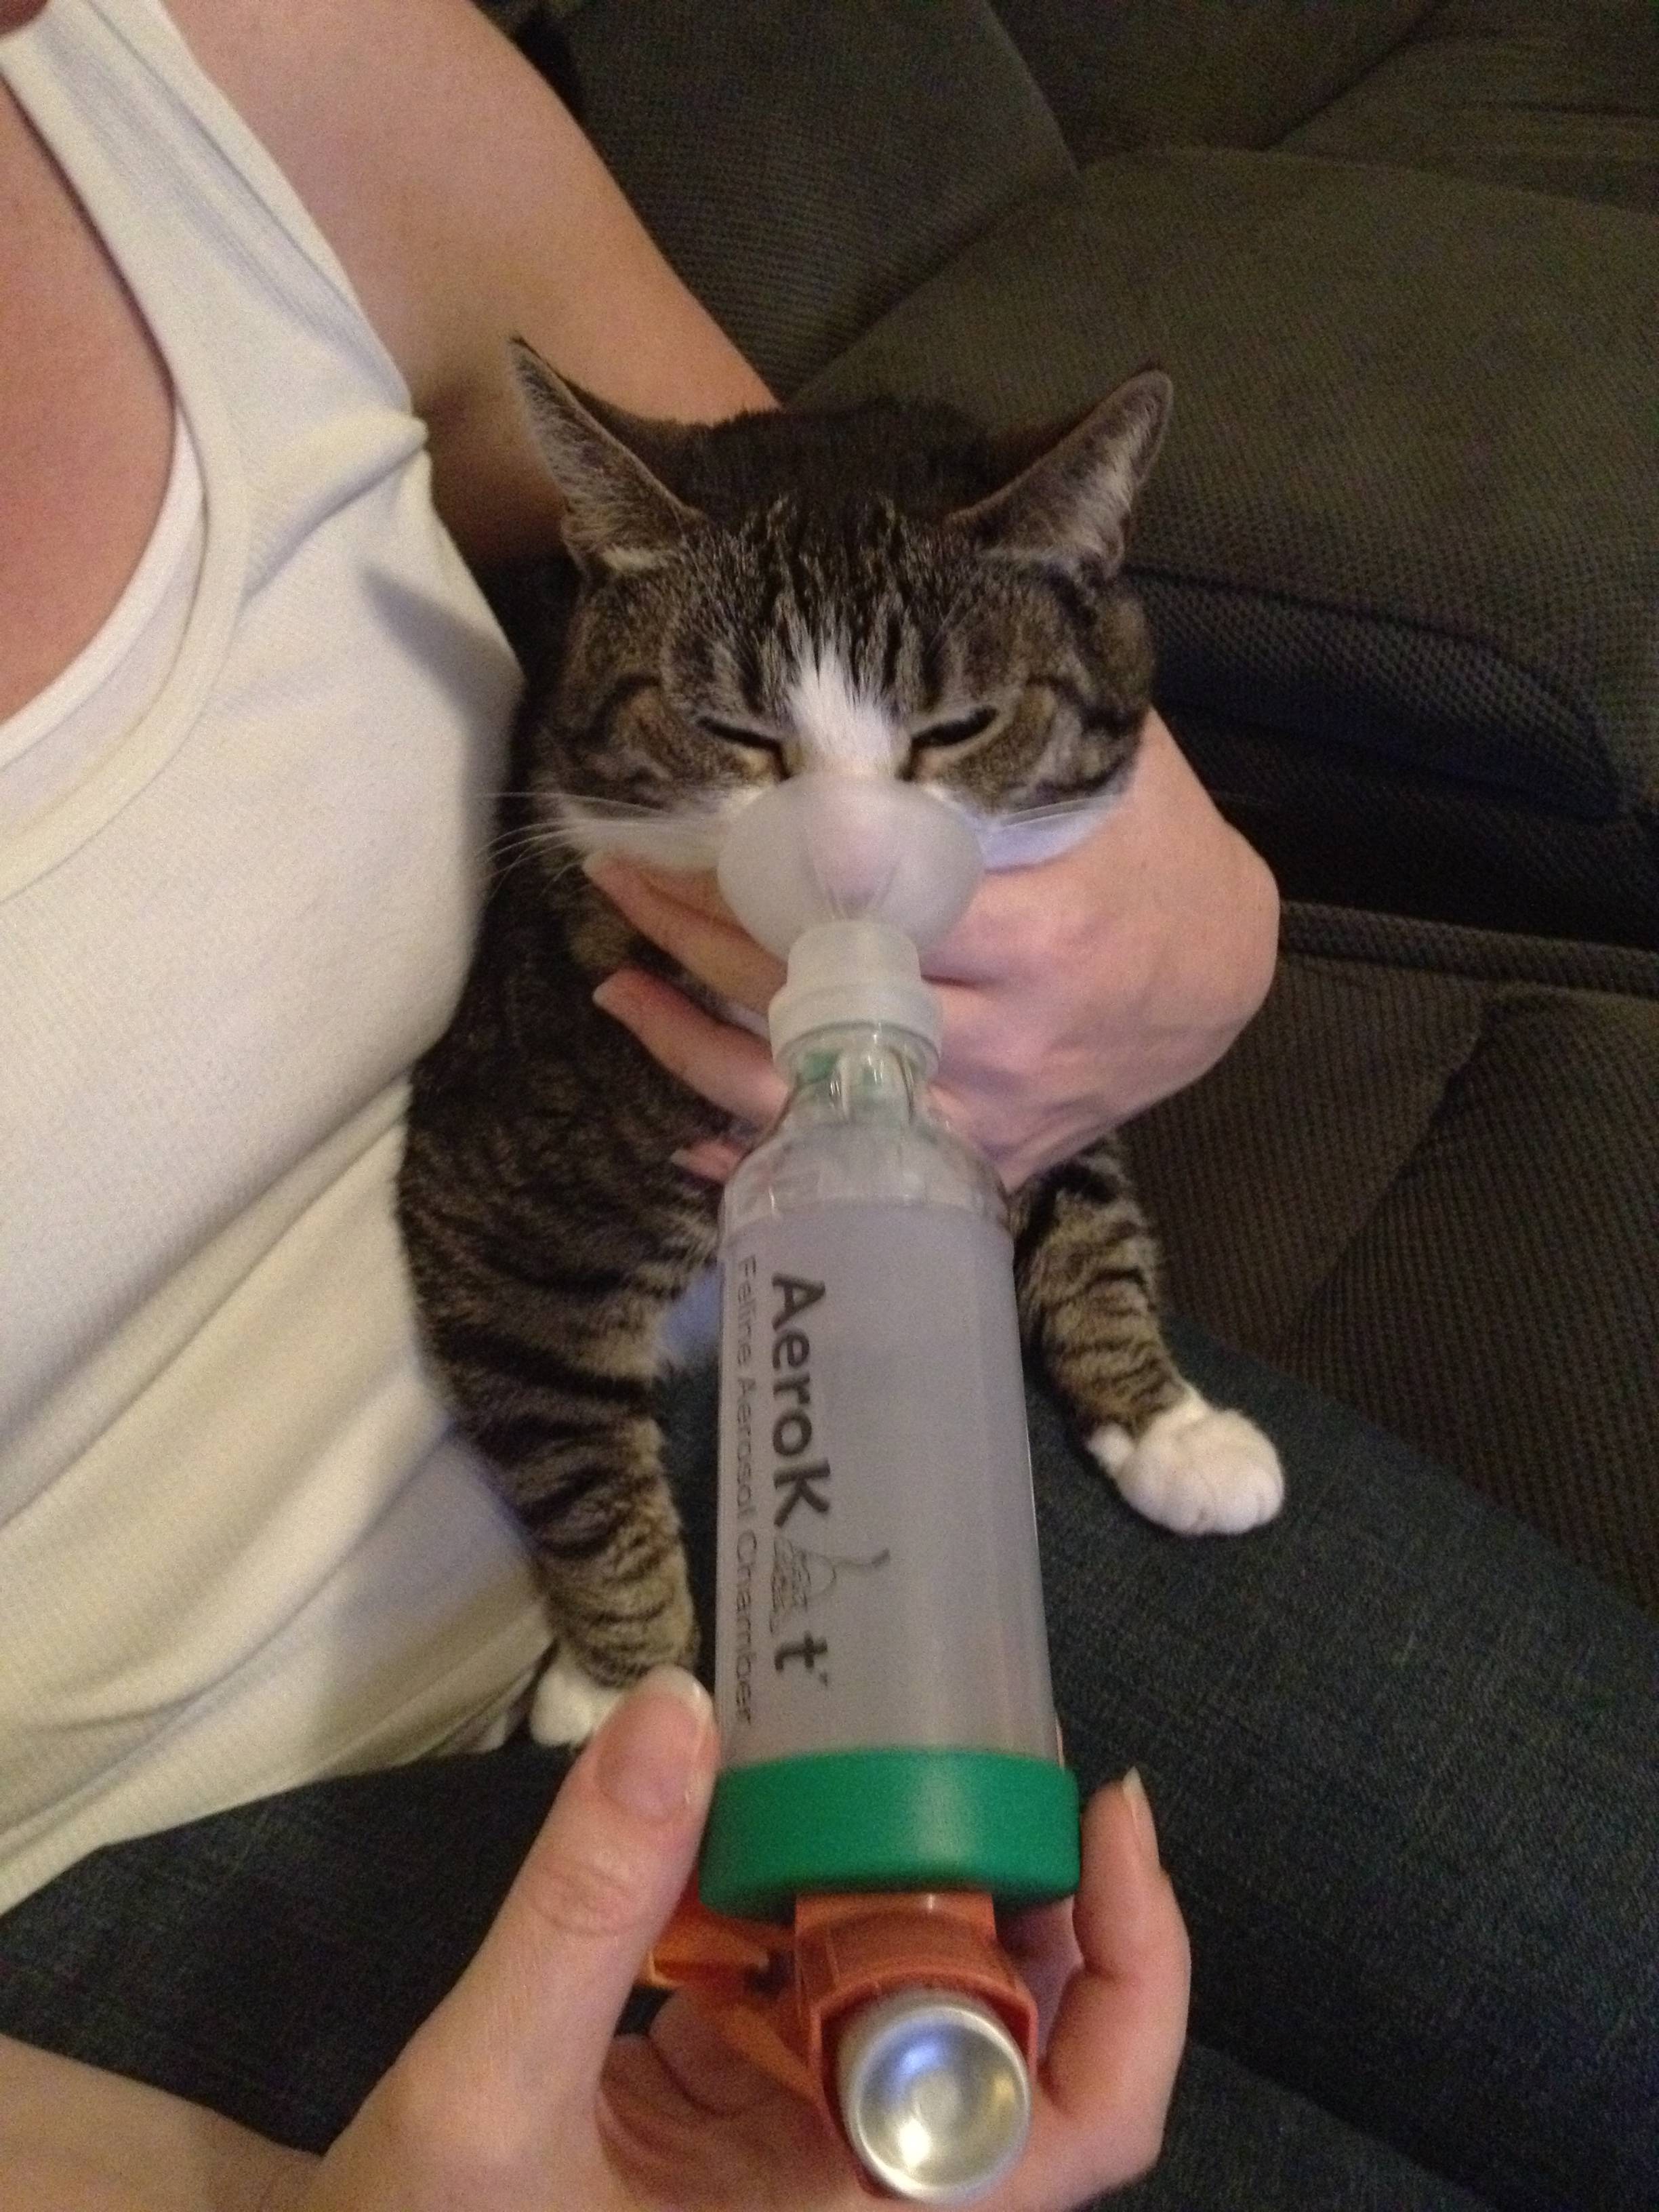 Asthma inhaler for a cat